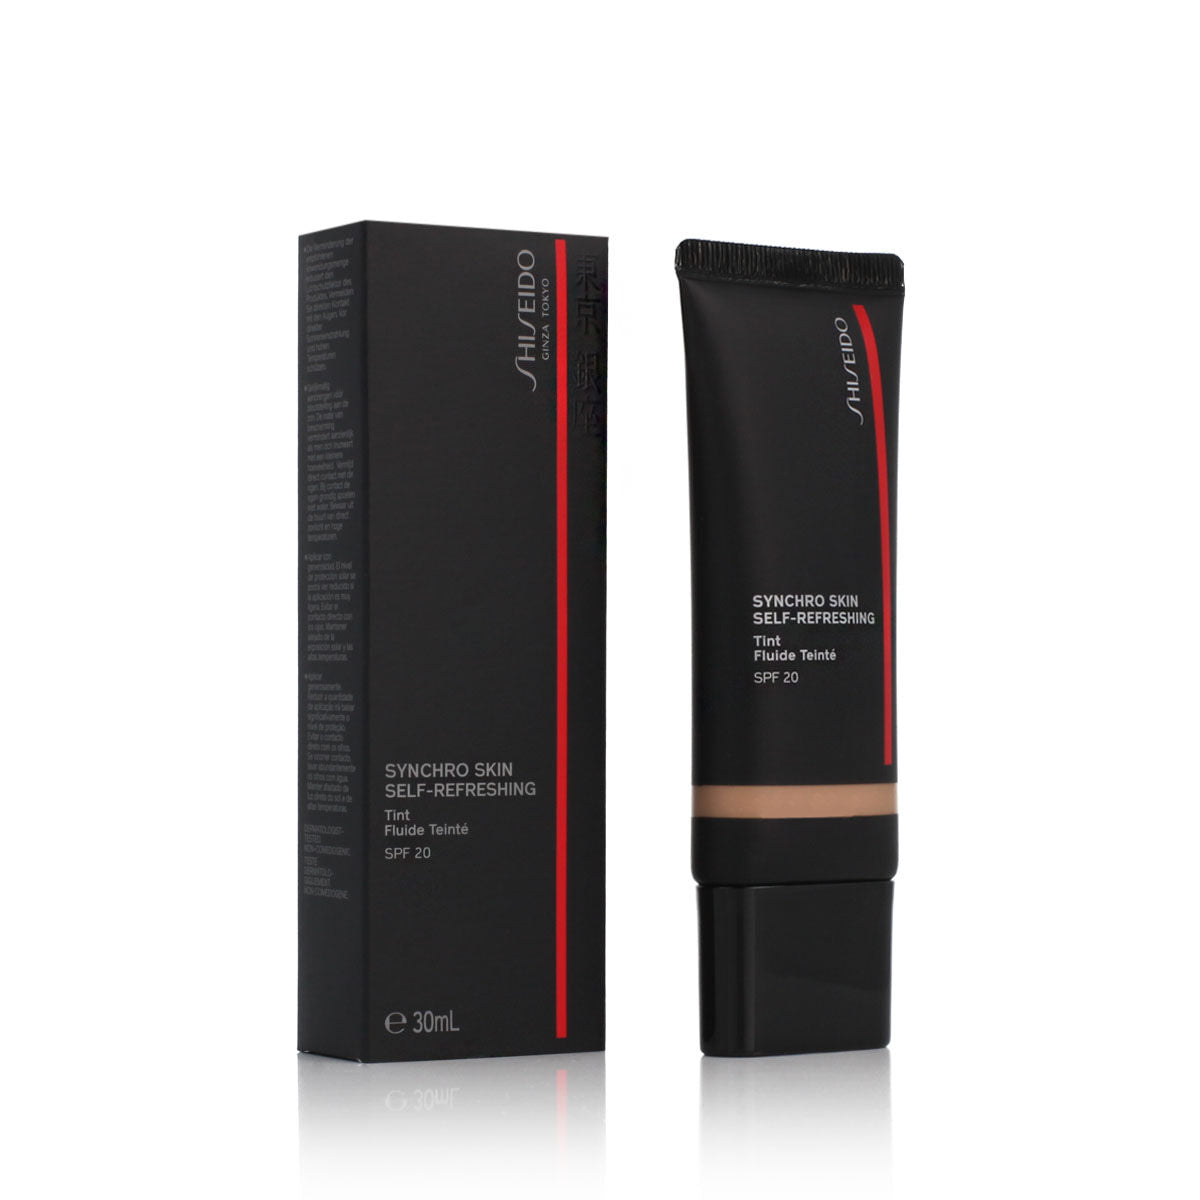 Dækcreme til Ansigtet Shiseido Nº 315 Medium/Moyen Matsu Spf 20 (30 ml)